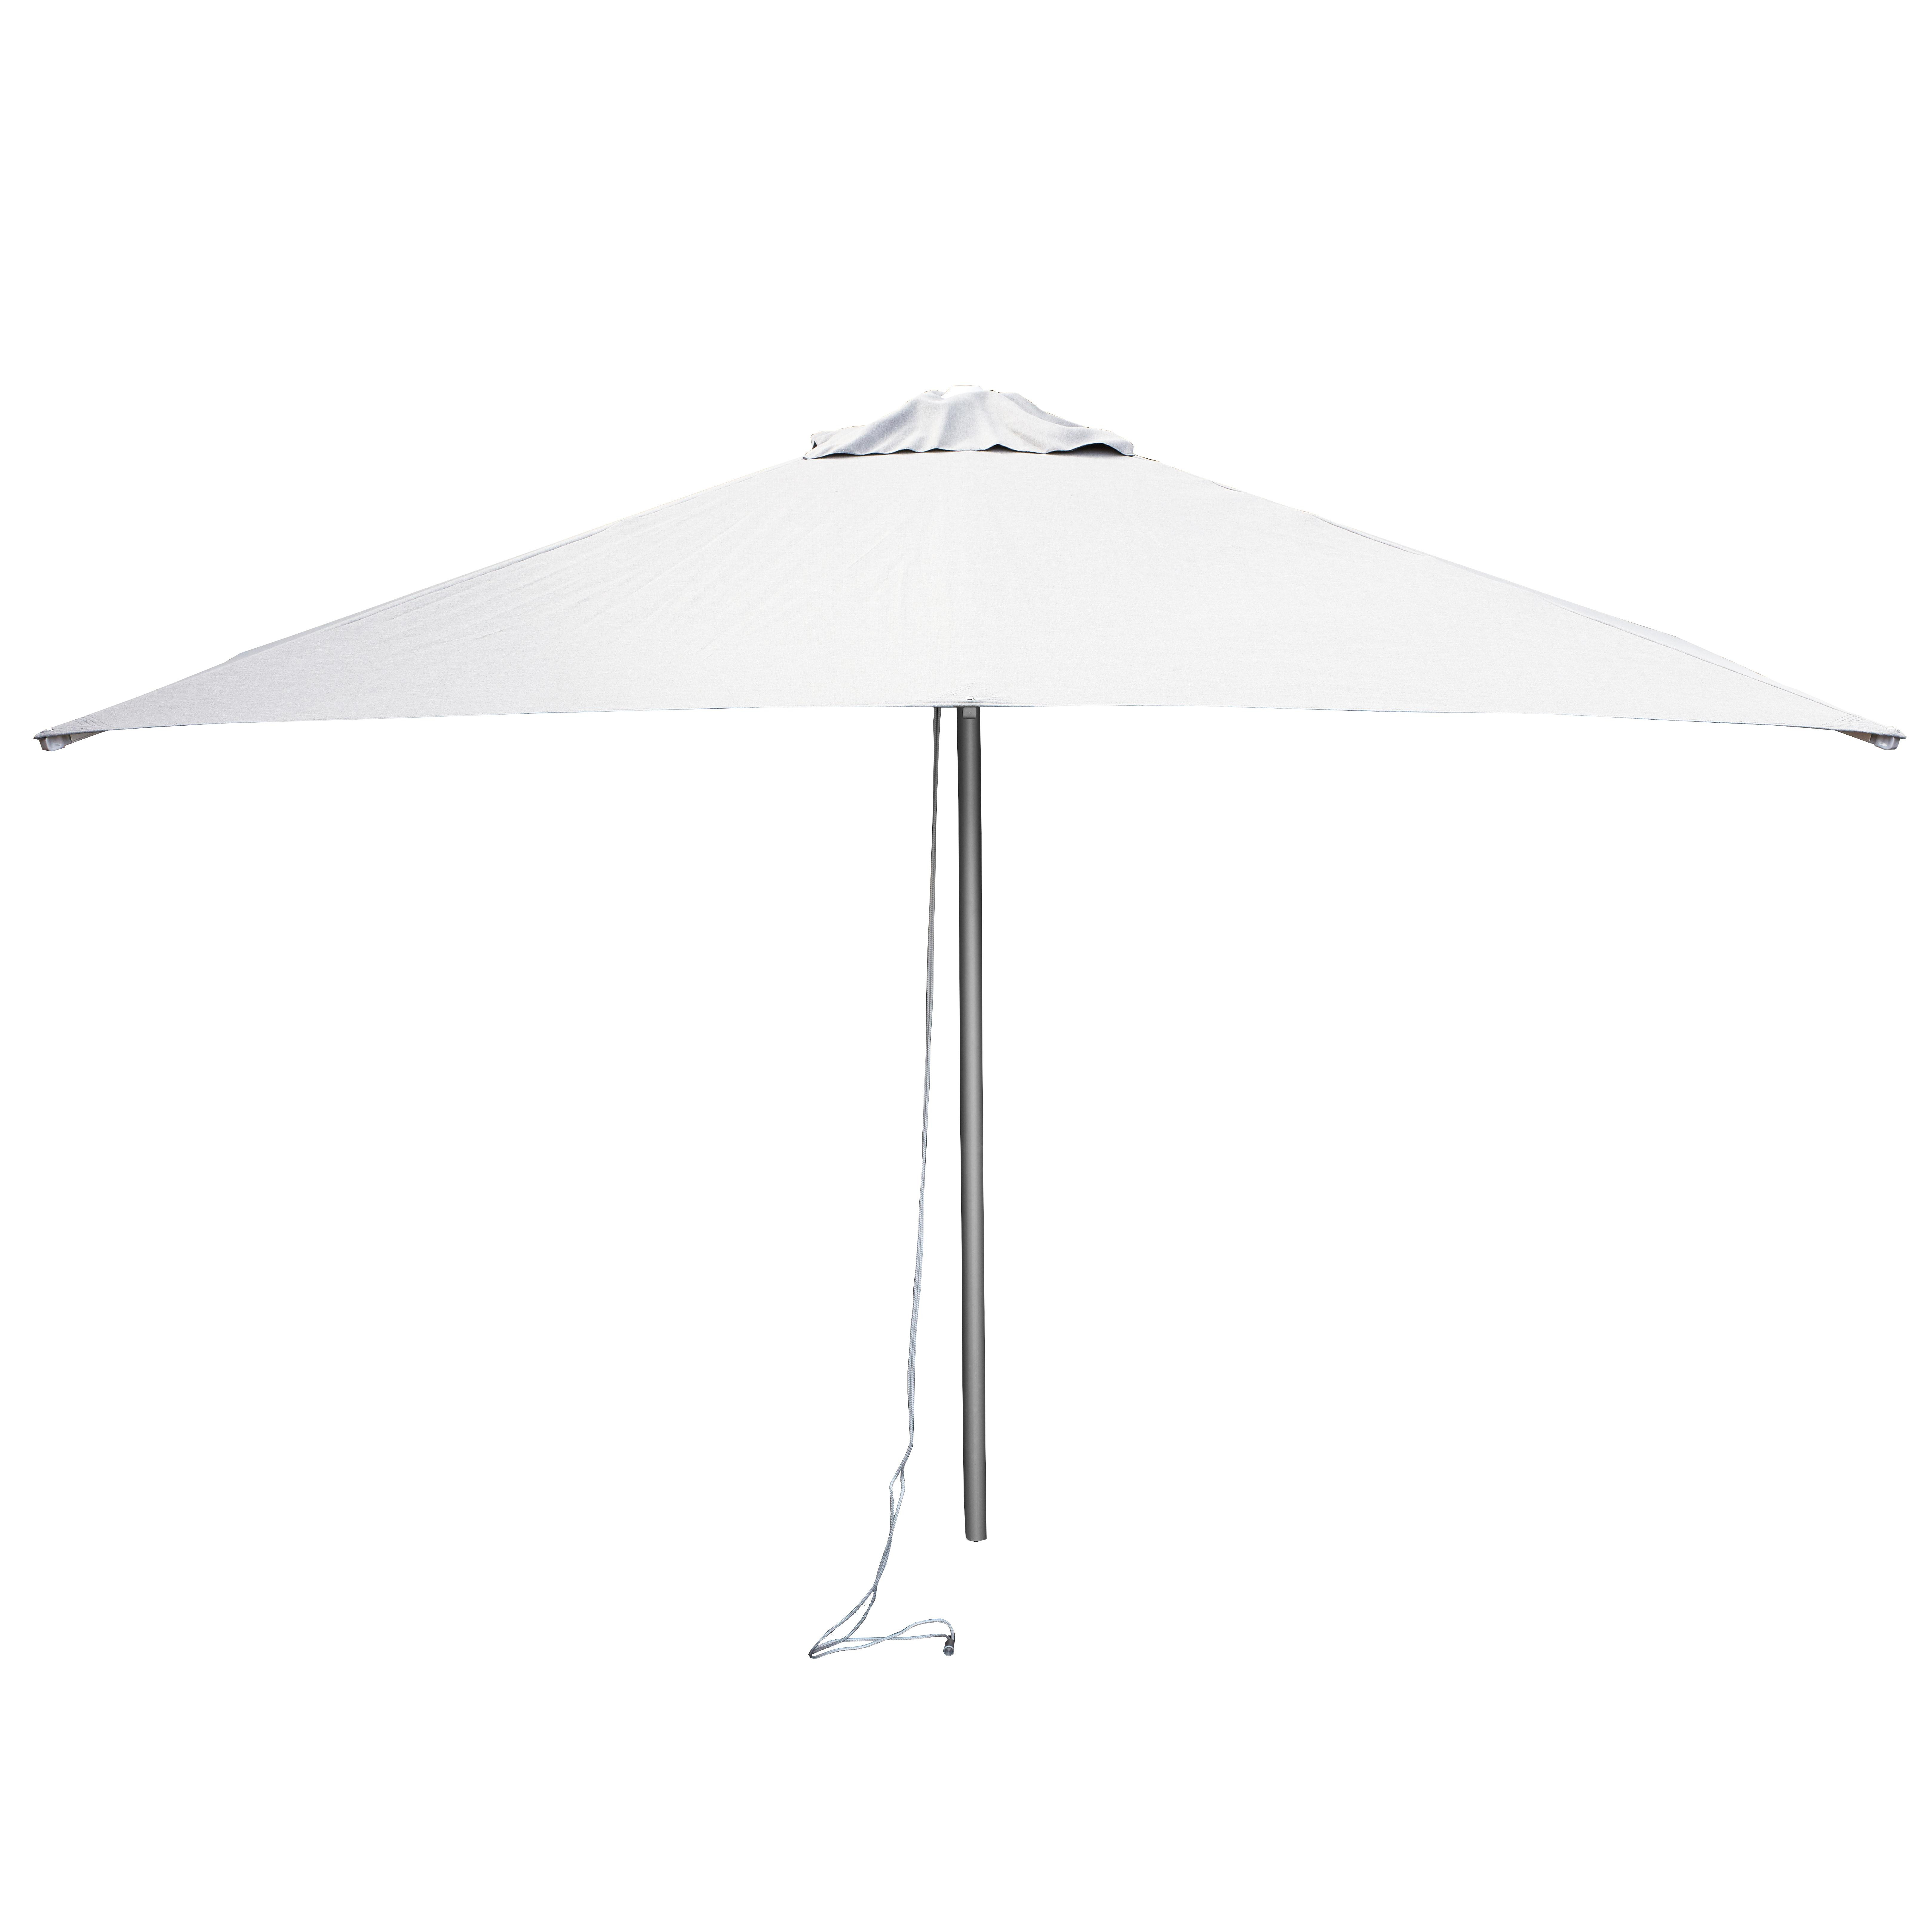 Cane-Line Harbour parasol met katrolsysteem 2x2 dusty white | Flinders